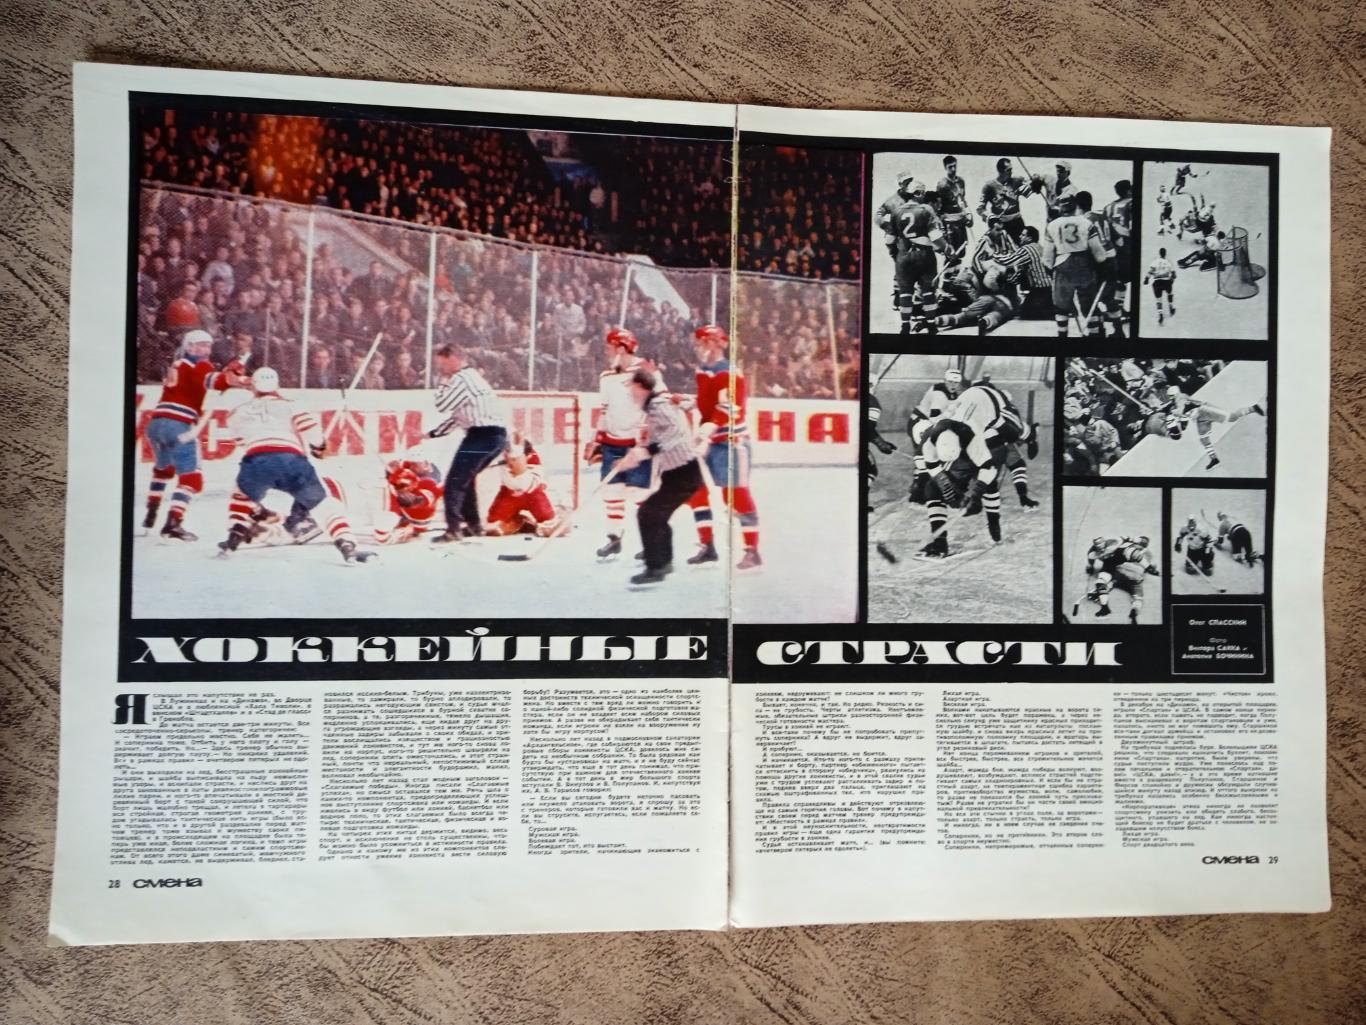 Статья.Фото.Хоккей.Хоккейные страсти.Журнал Смена 1969 г.